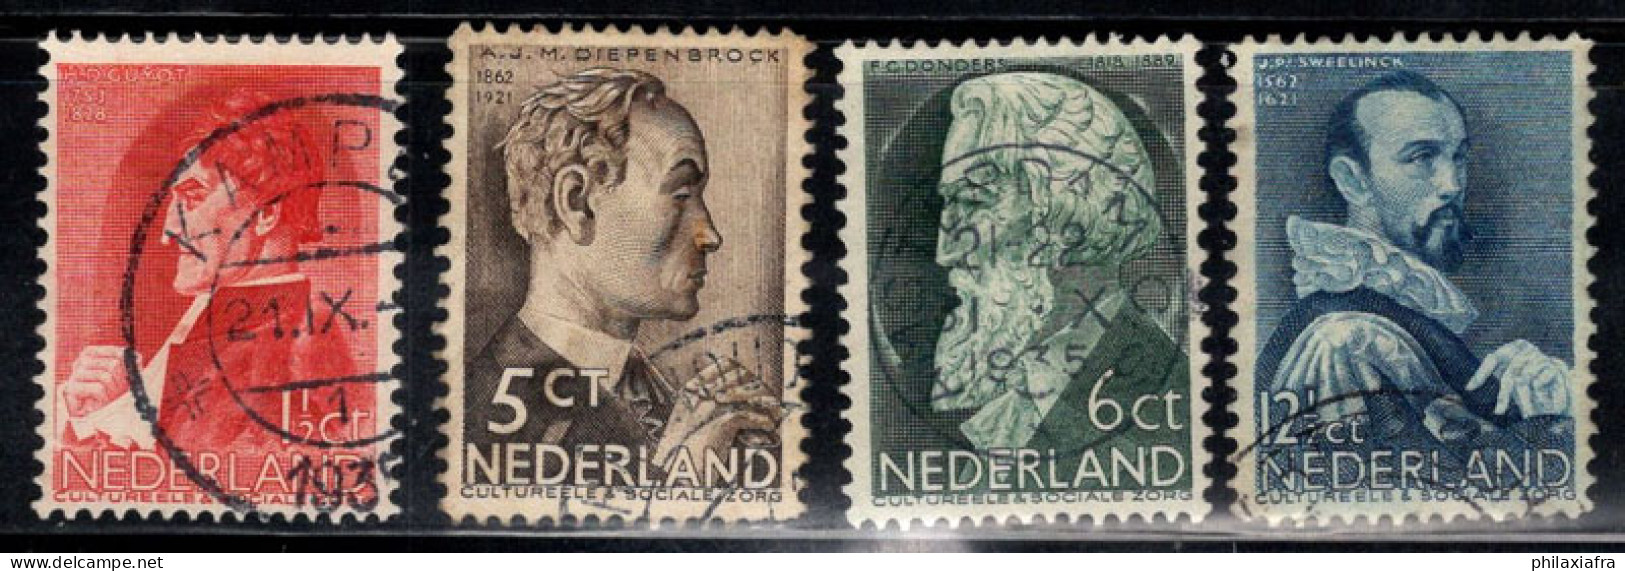 Pays-Bas 1935 Mi. 282-285 Oblitéré 100% Débat Télévisé - Used Stamps